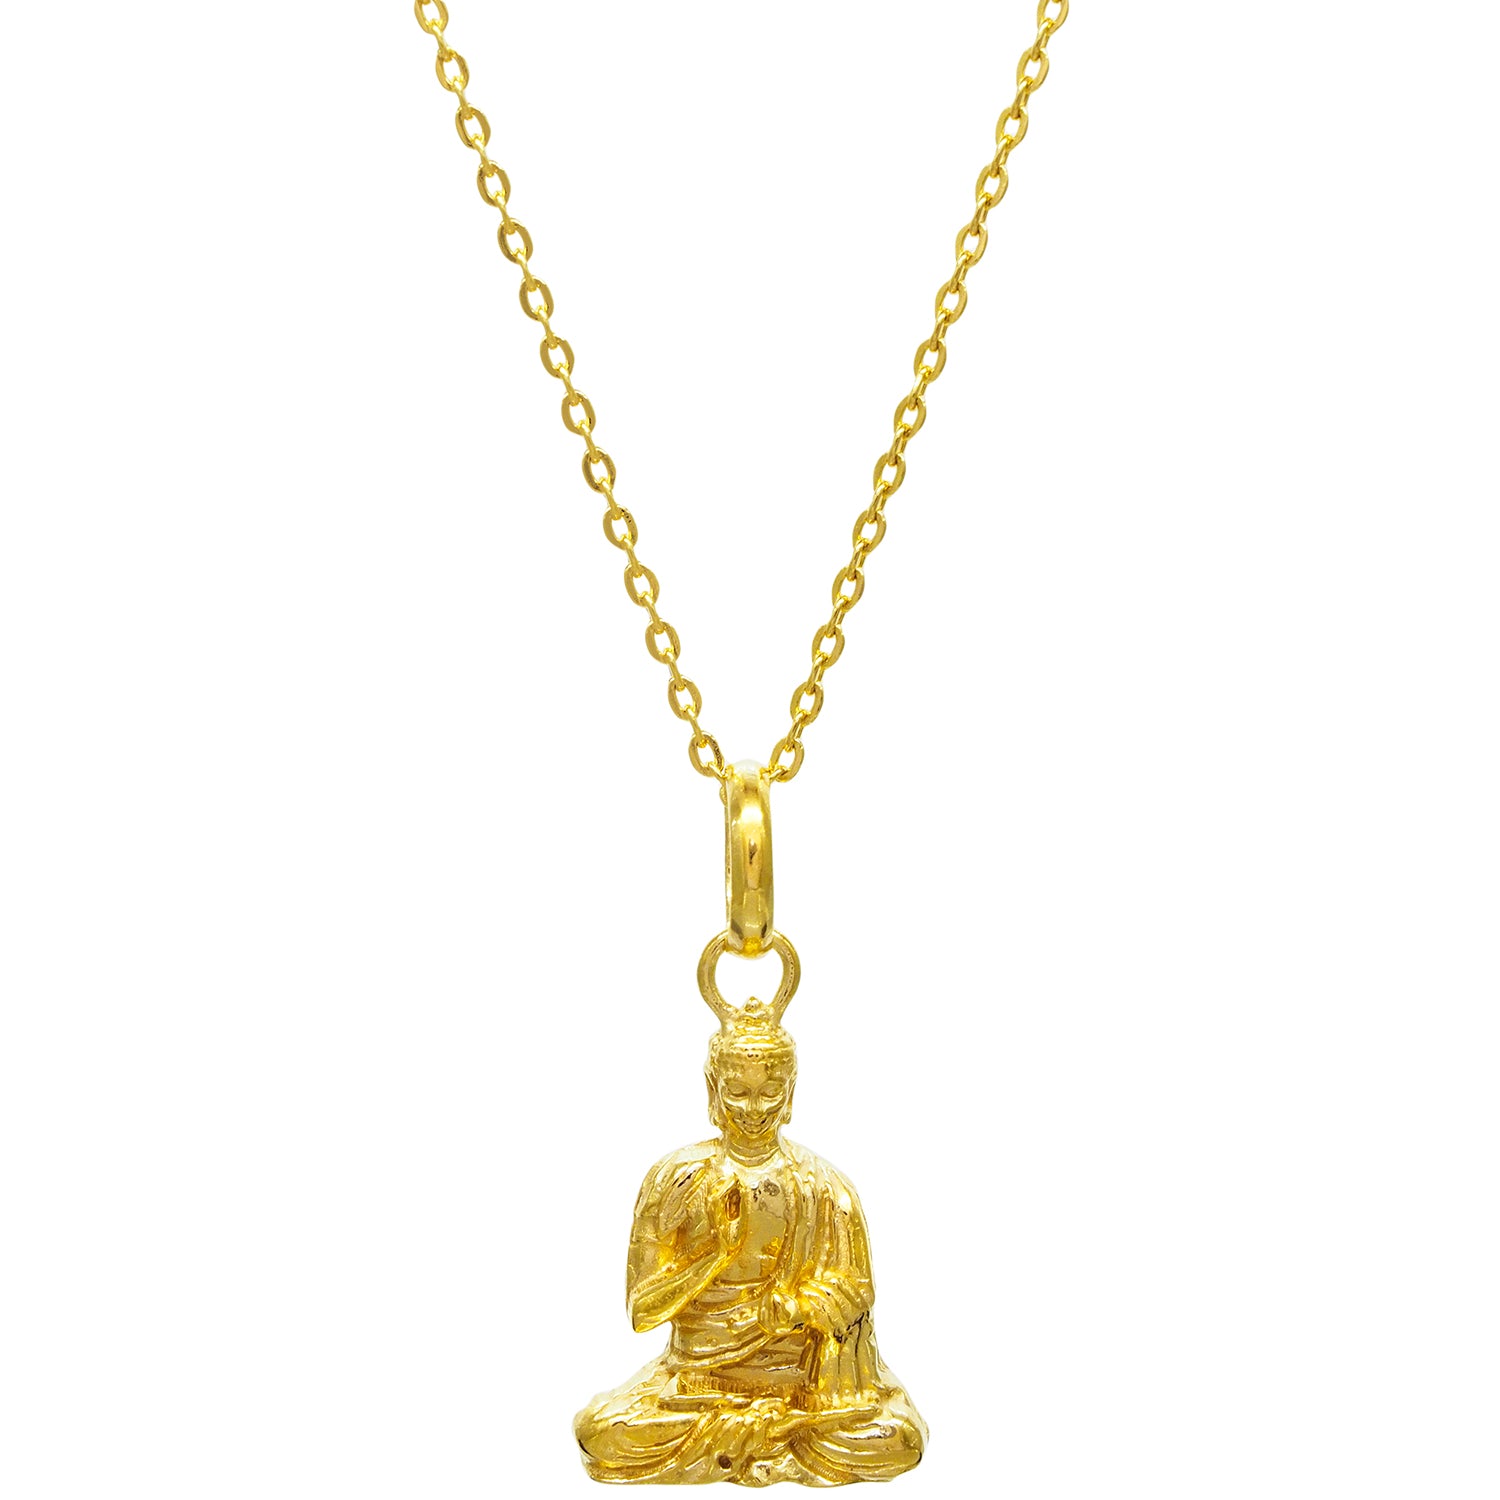 Hochwertig handgearbeitet und fein detaillierter Lehrender-Buddha-Anhänger vergoldet von ETERNAL BLISS - Spiritueller Schmuck